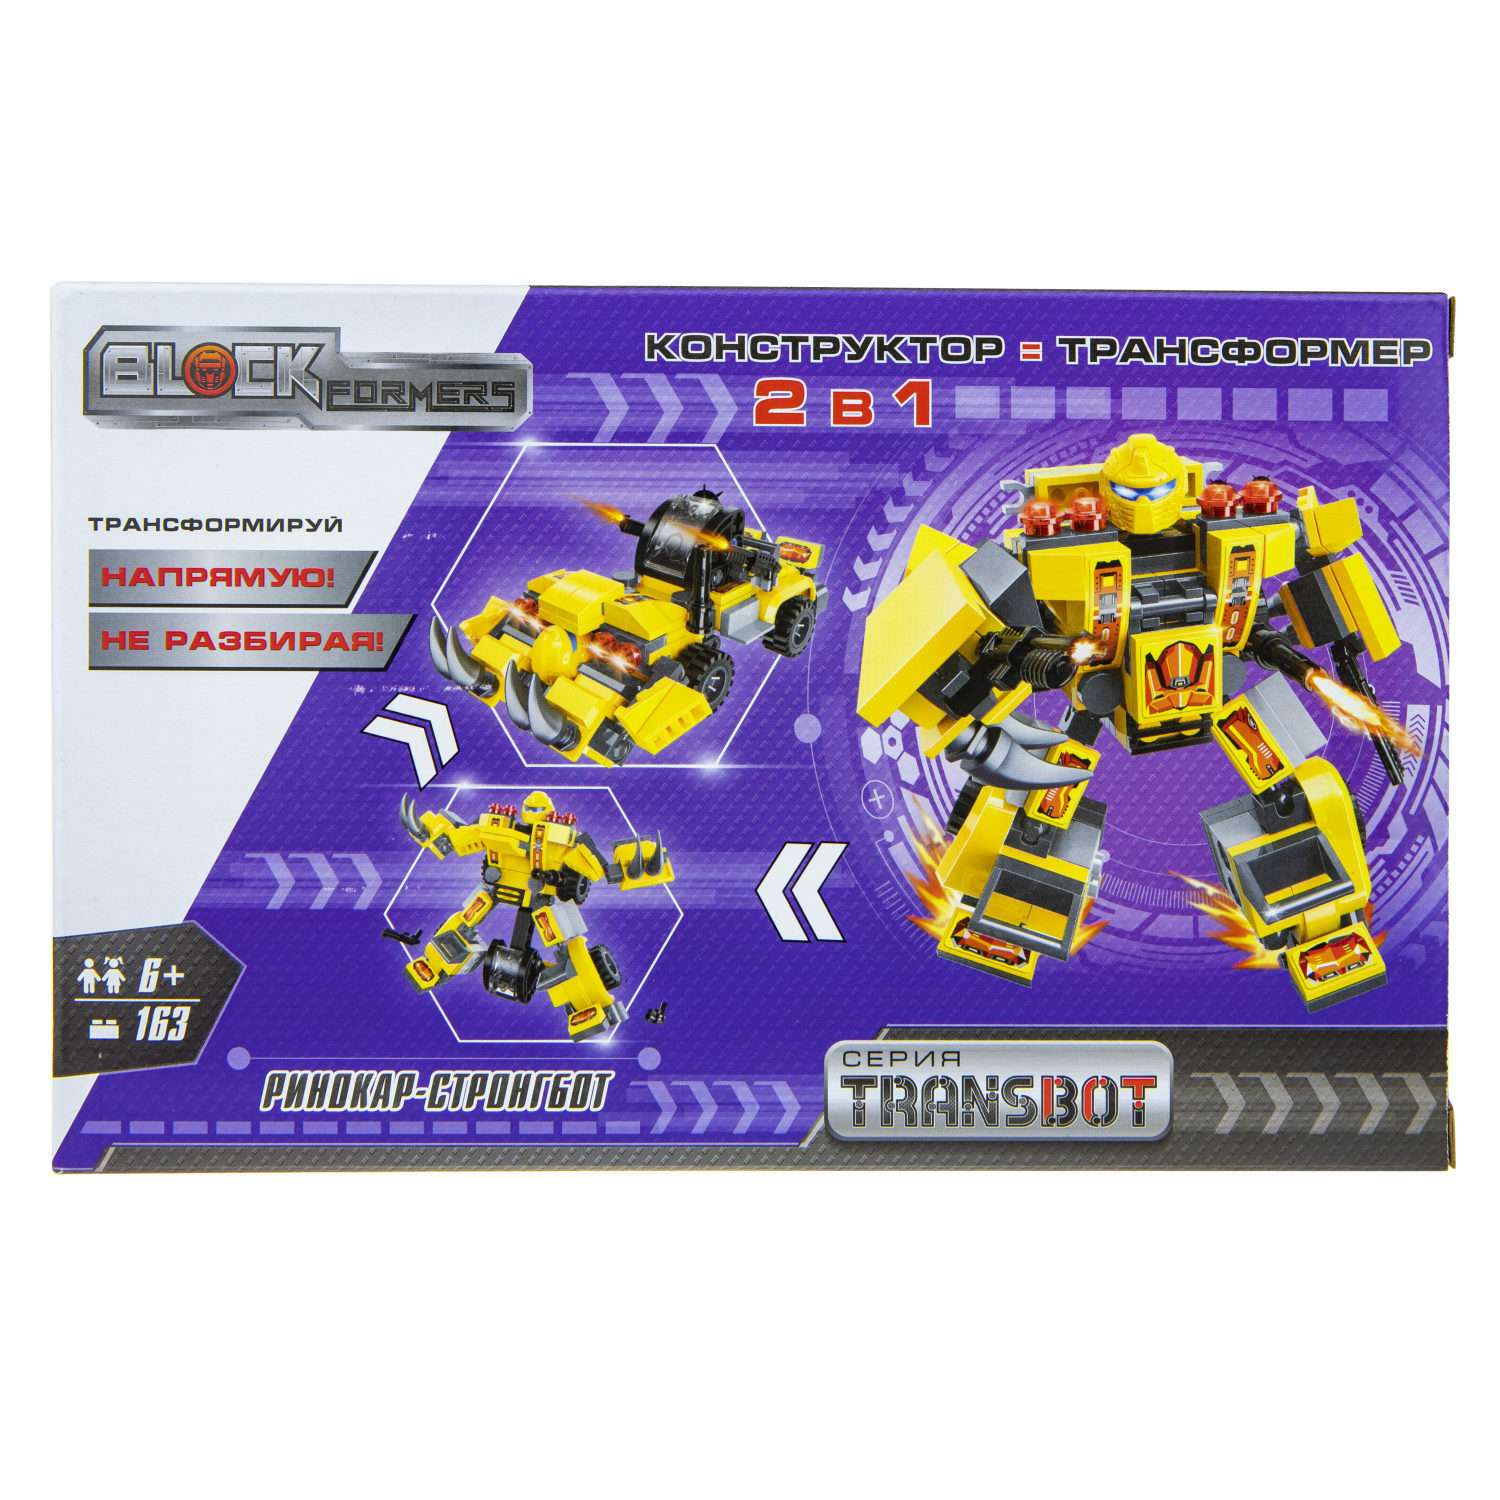 Конструктор Blockformers Transbot Ринокар и Стронгбот - фото 4